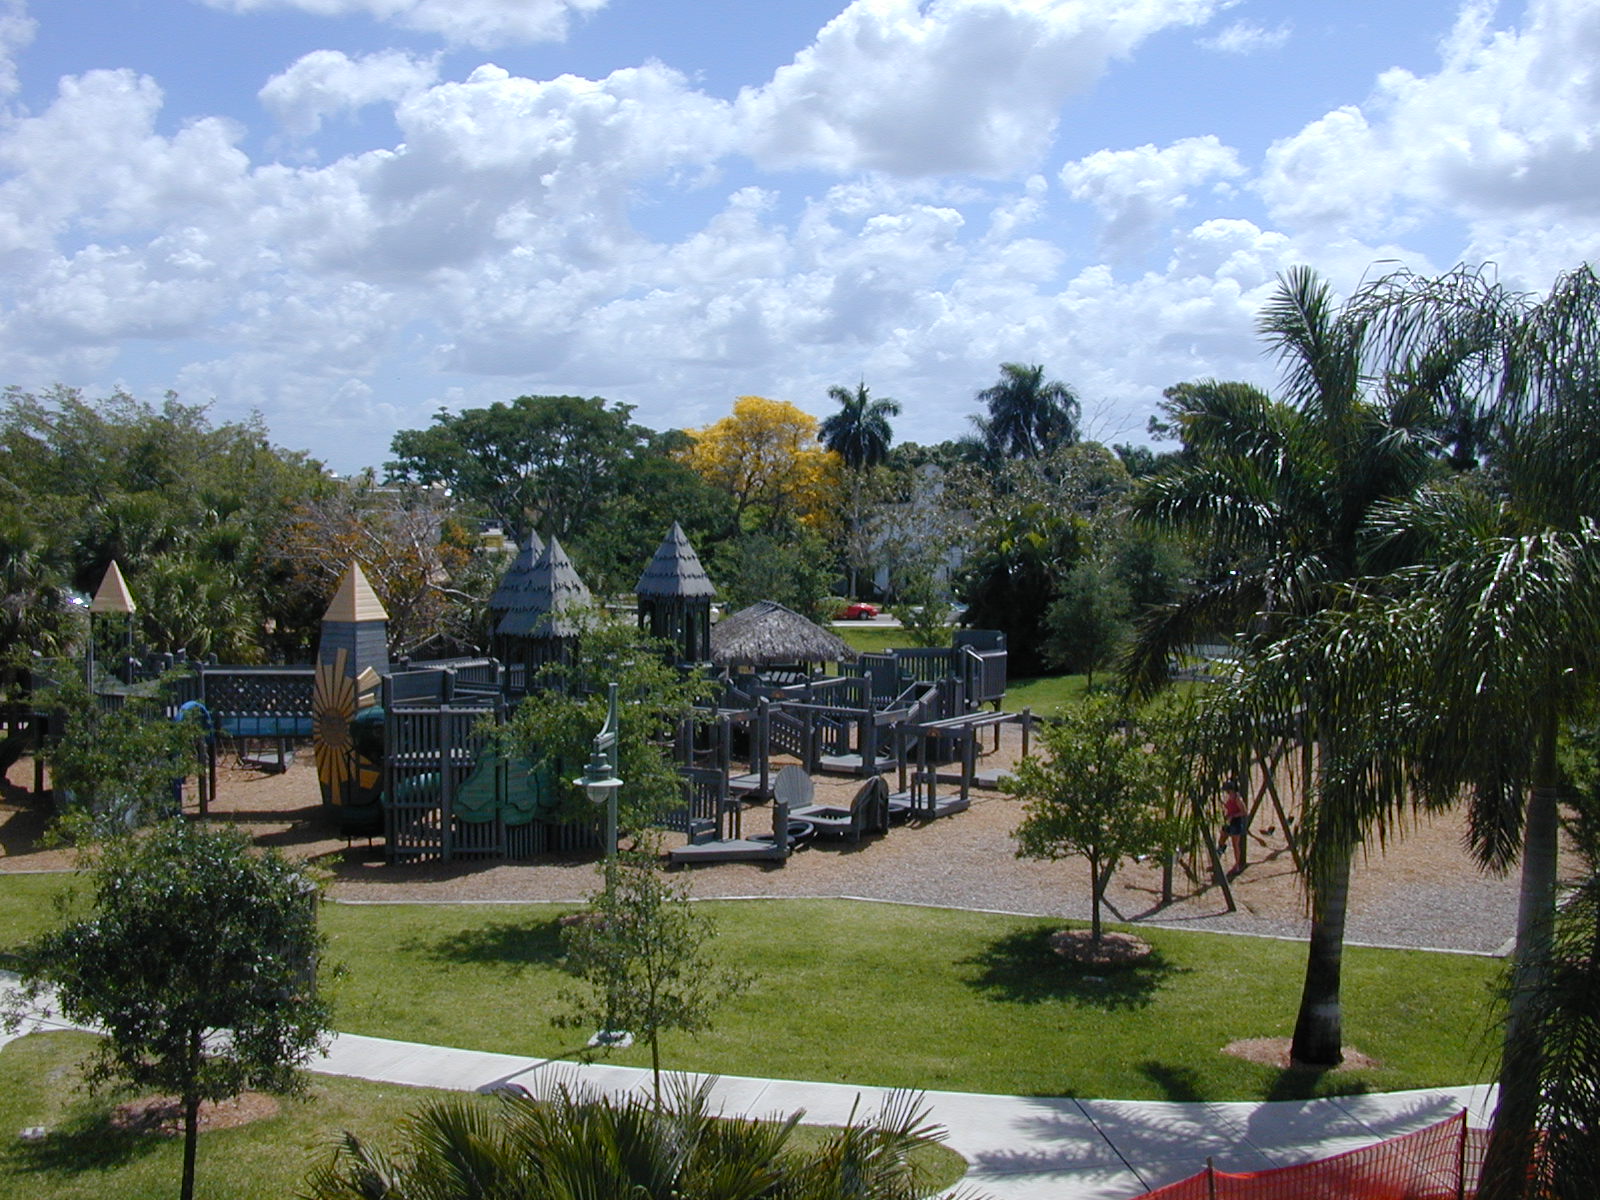 Cambier Park